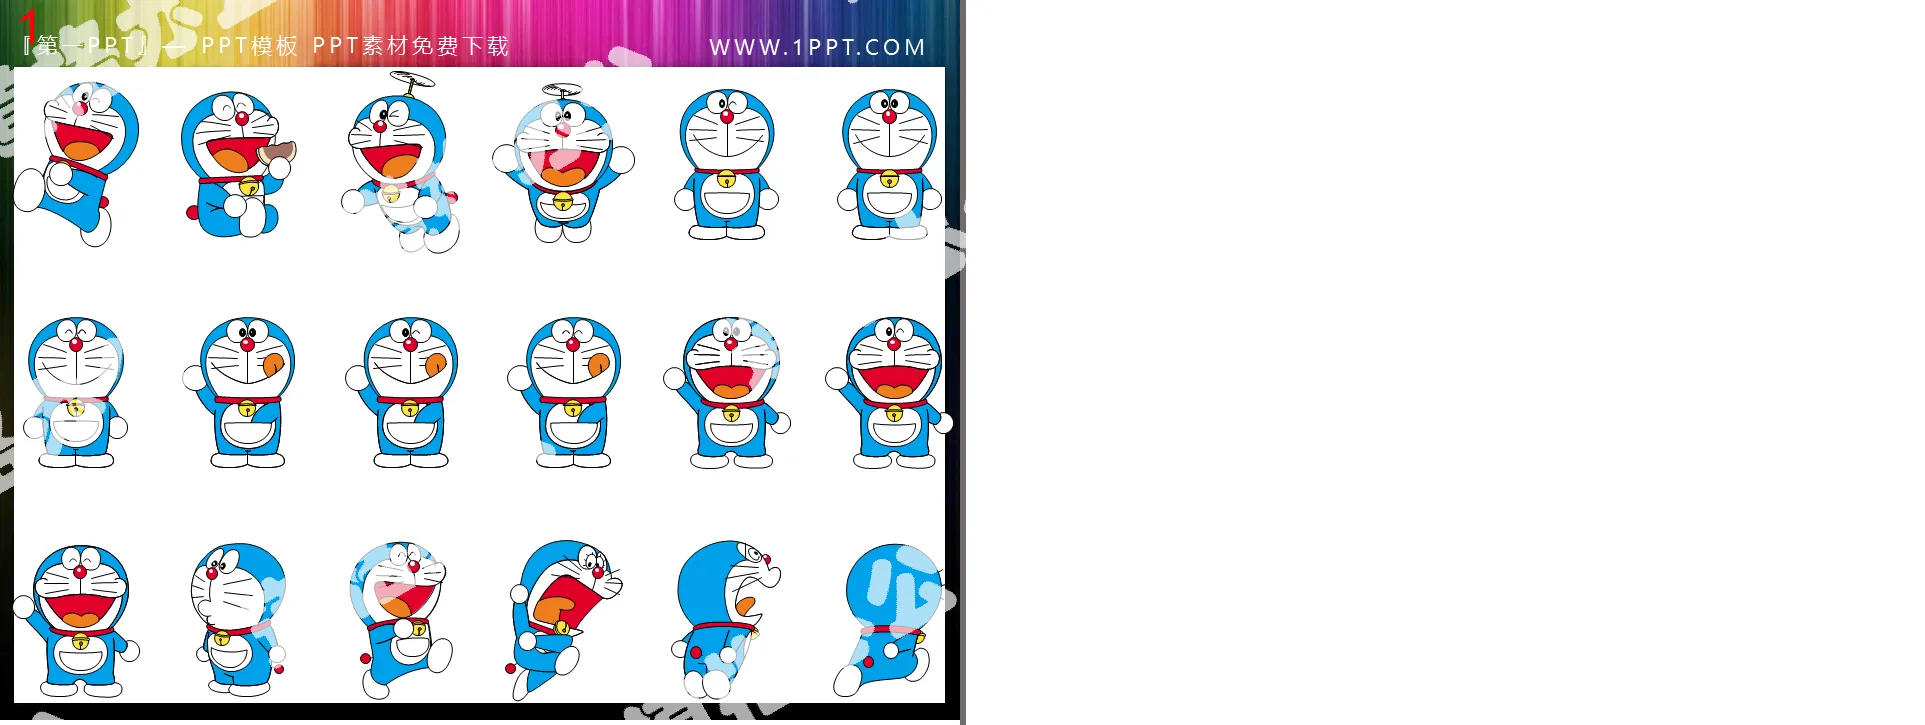 Doraemon PPT clip art 4